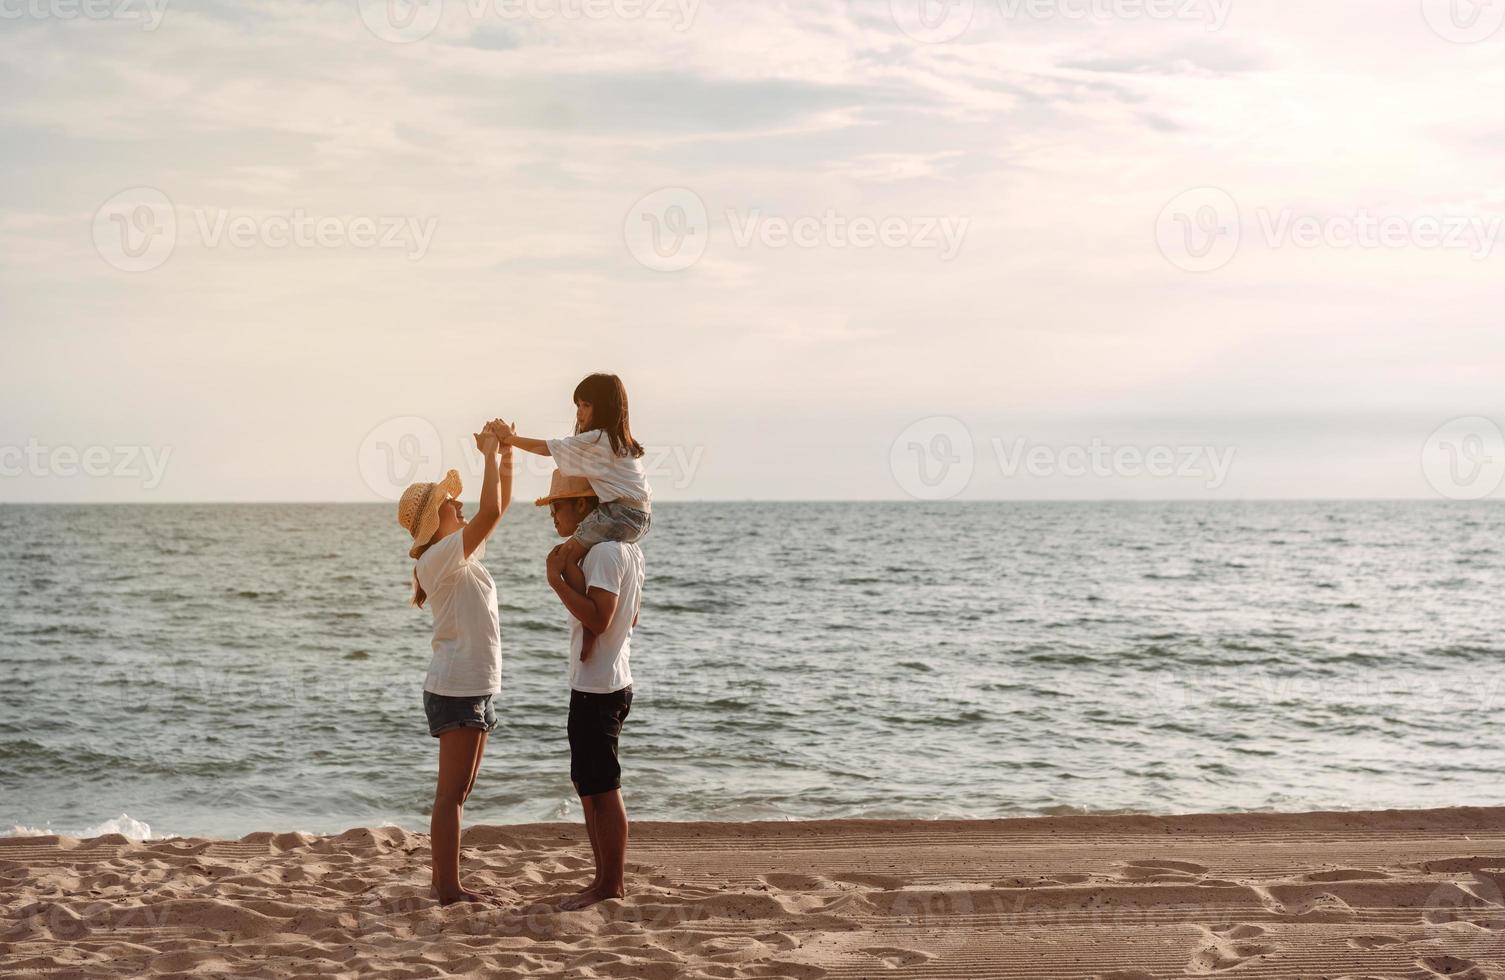 contento asiático familia disfrutar el mar playa a consistente padre, madre y hija teniendo divertido jugando playa en verano vacaciones en el Oceano playa. contento familia con vacaciones hora estilo de vida concepto. foto